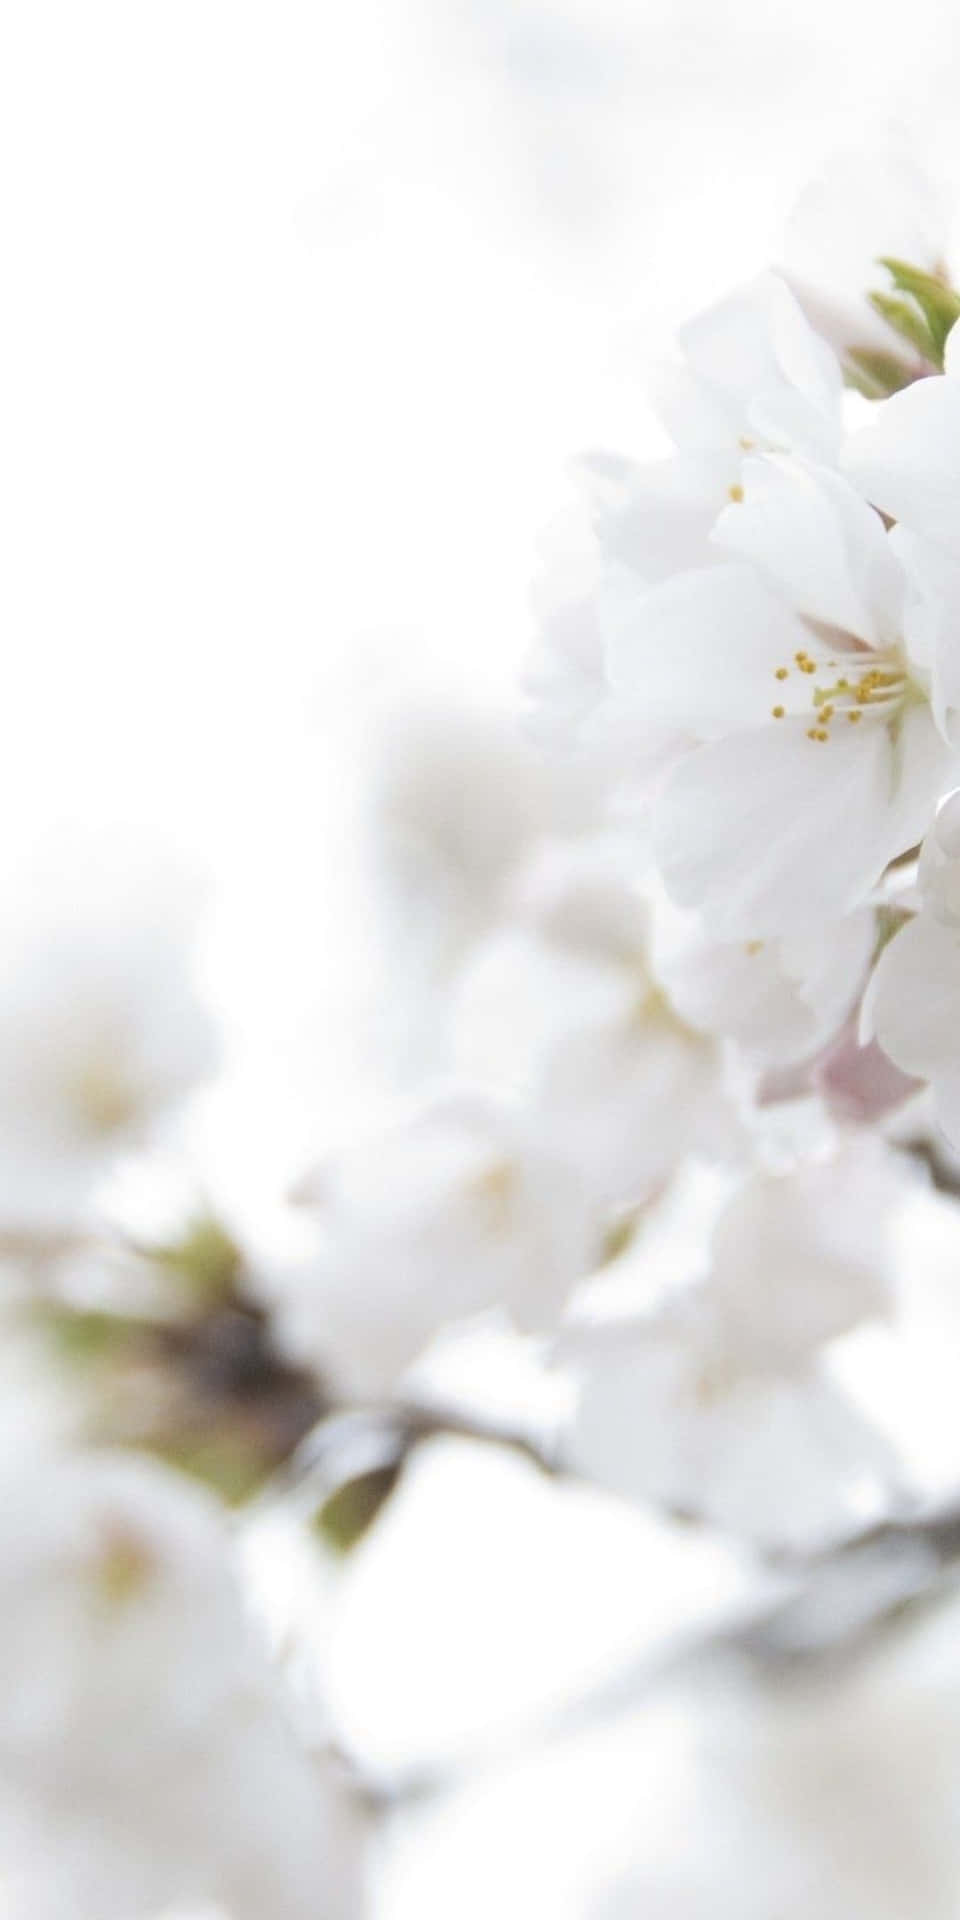 Fondode Pantalla Estético De Pixel 3 Con Flores Blancas.